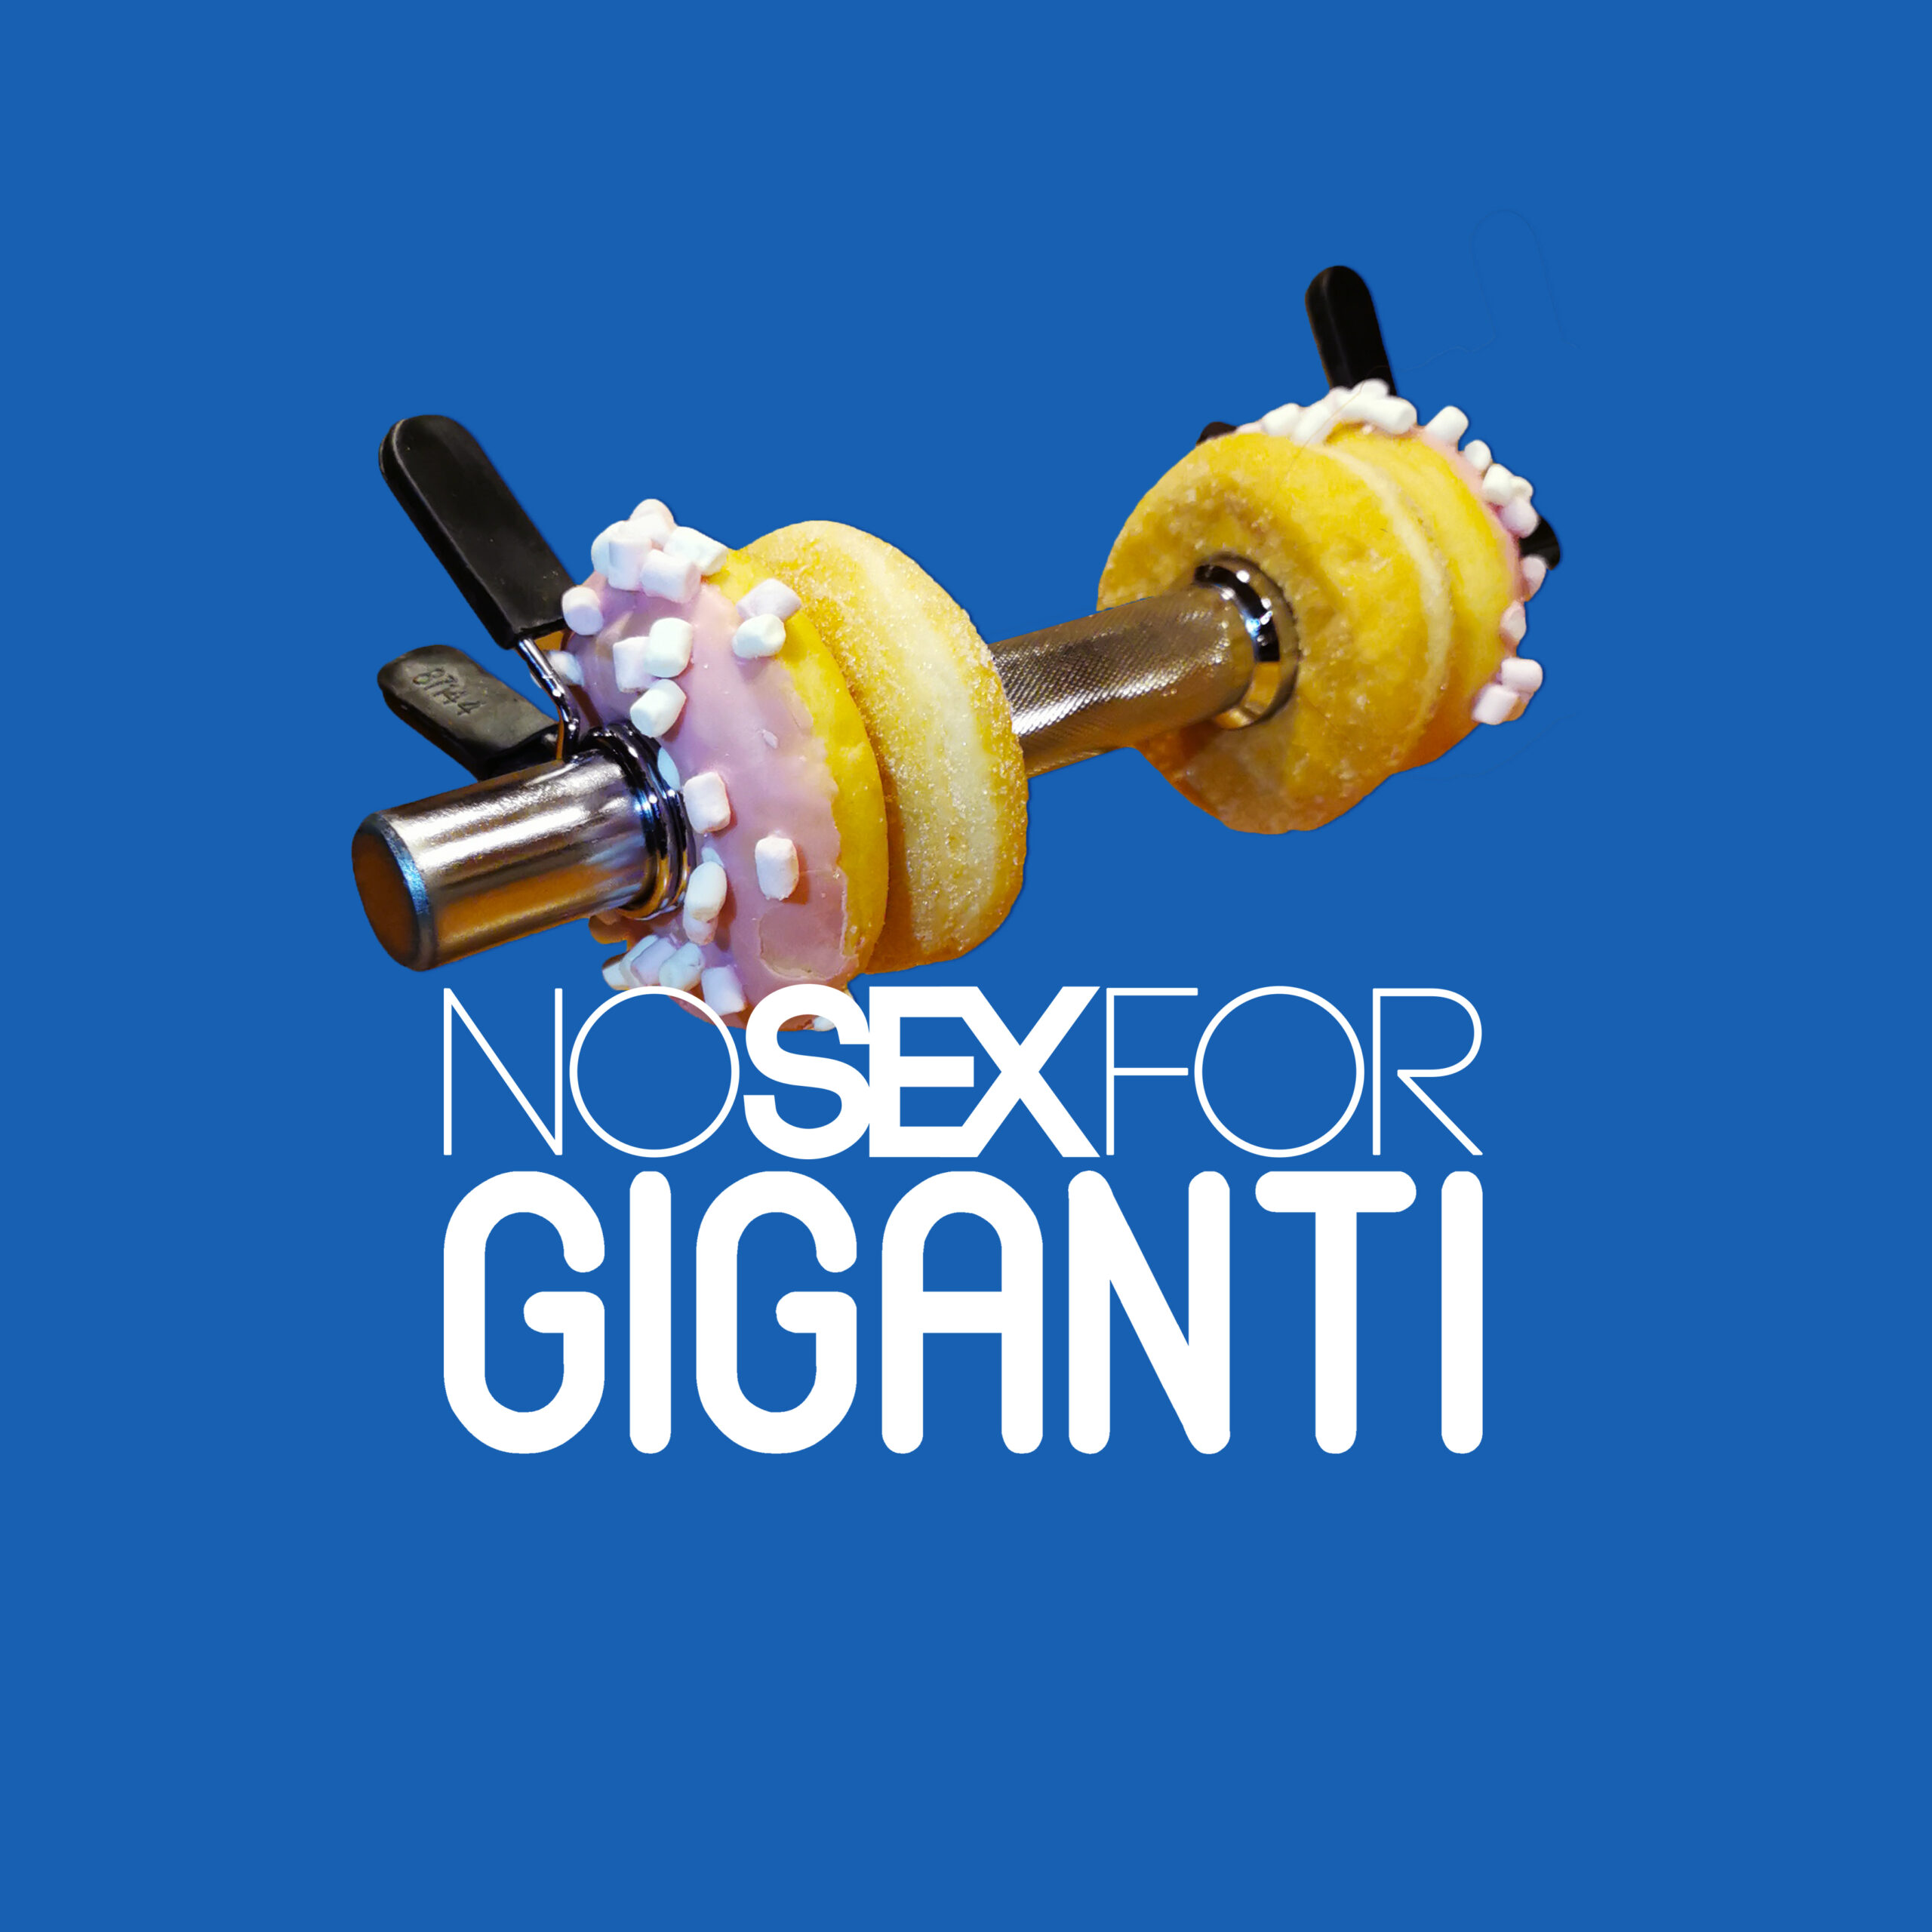 “Giganti” é il nuovo singolo dei Nosexfor